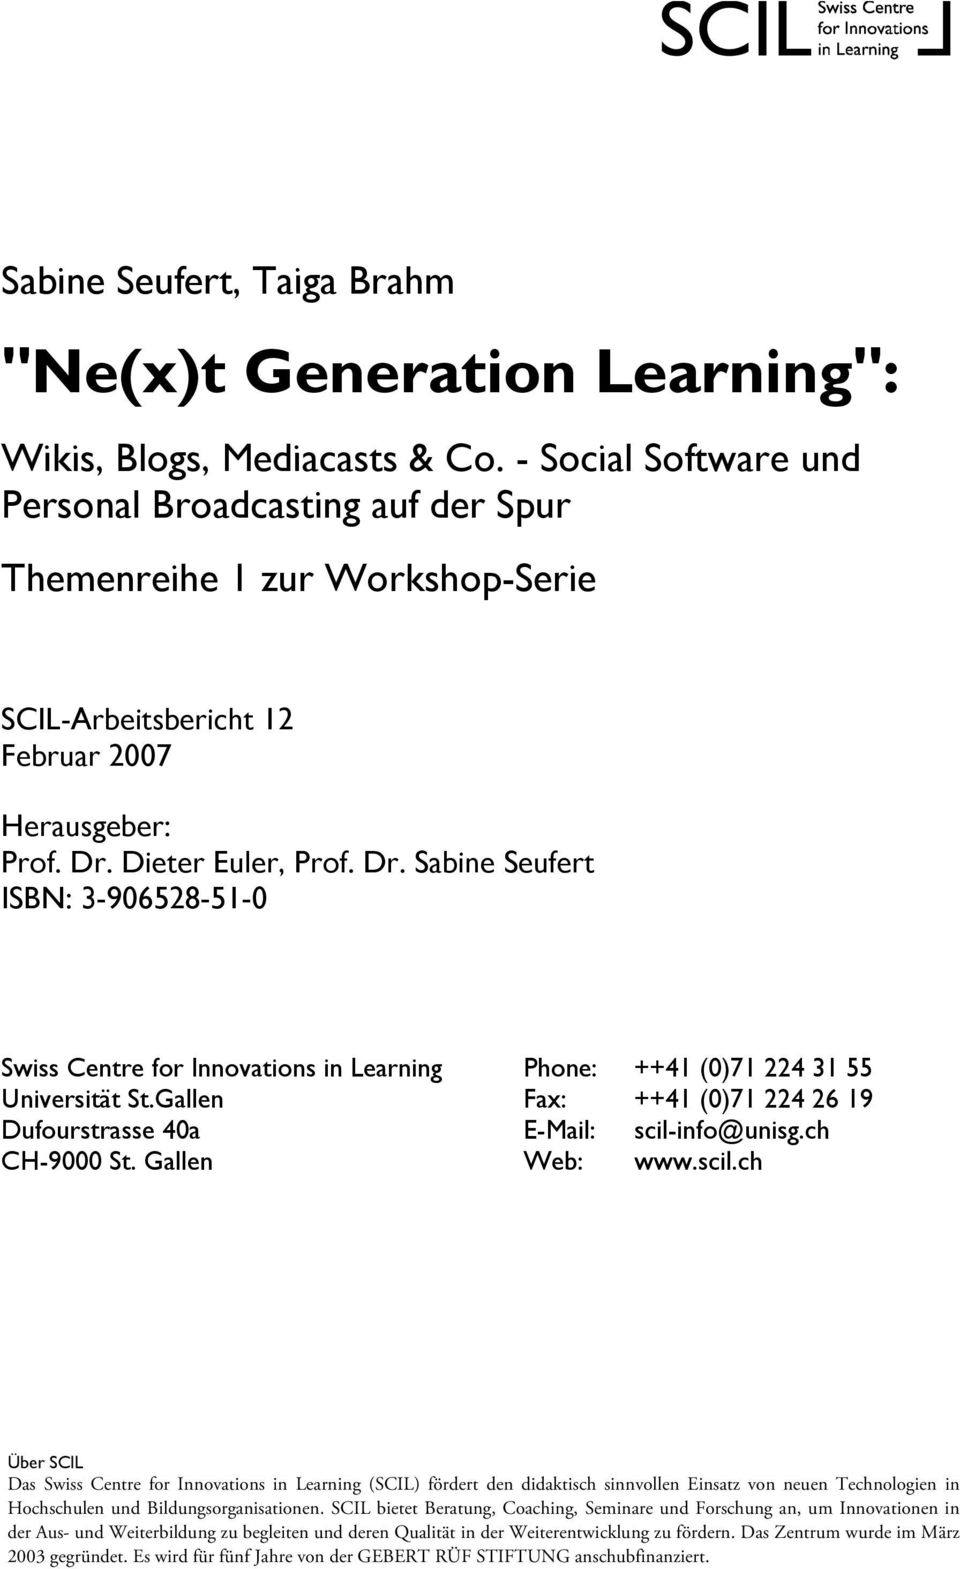 Dieter Euler, Prof. Dr. Sabine Seufert ISBN: 3-906528-51-0 Swiss Centre for Innovations in Learning Phone: ++41 (0)71 224 31 55 Universität St.